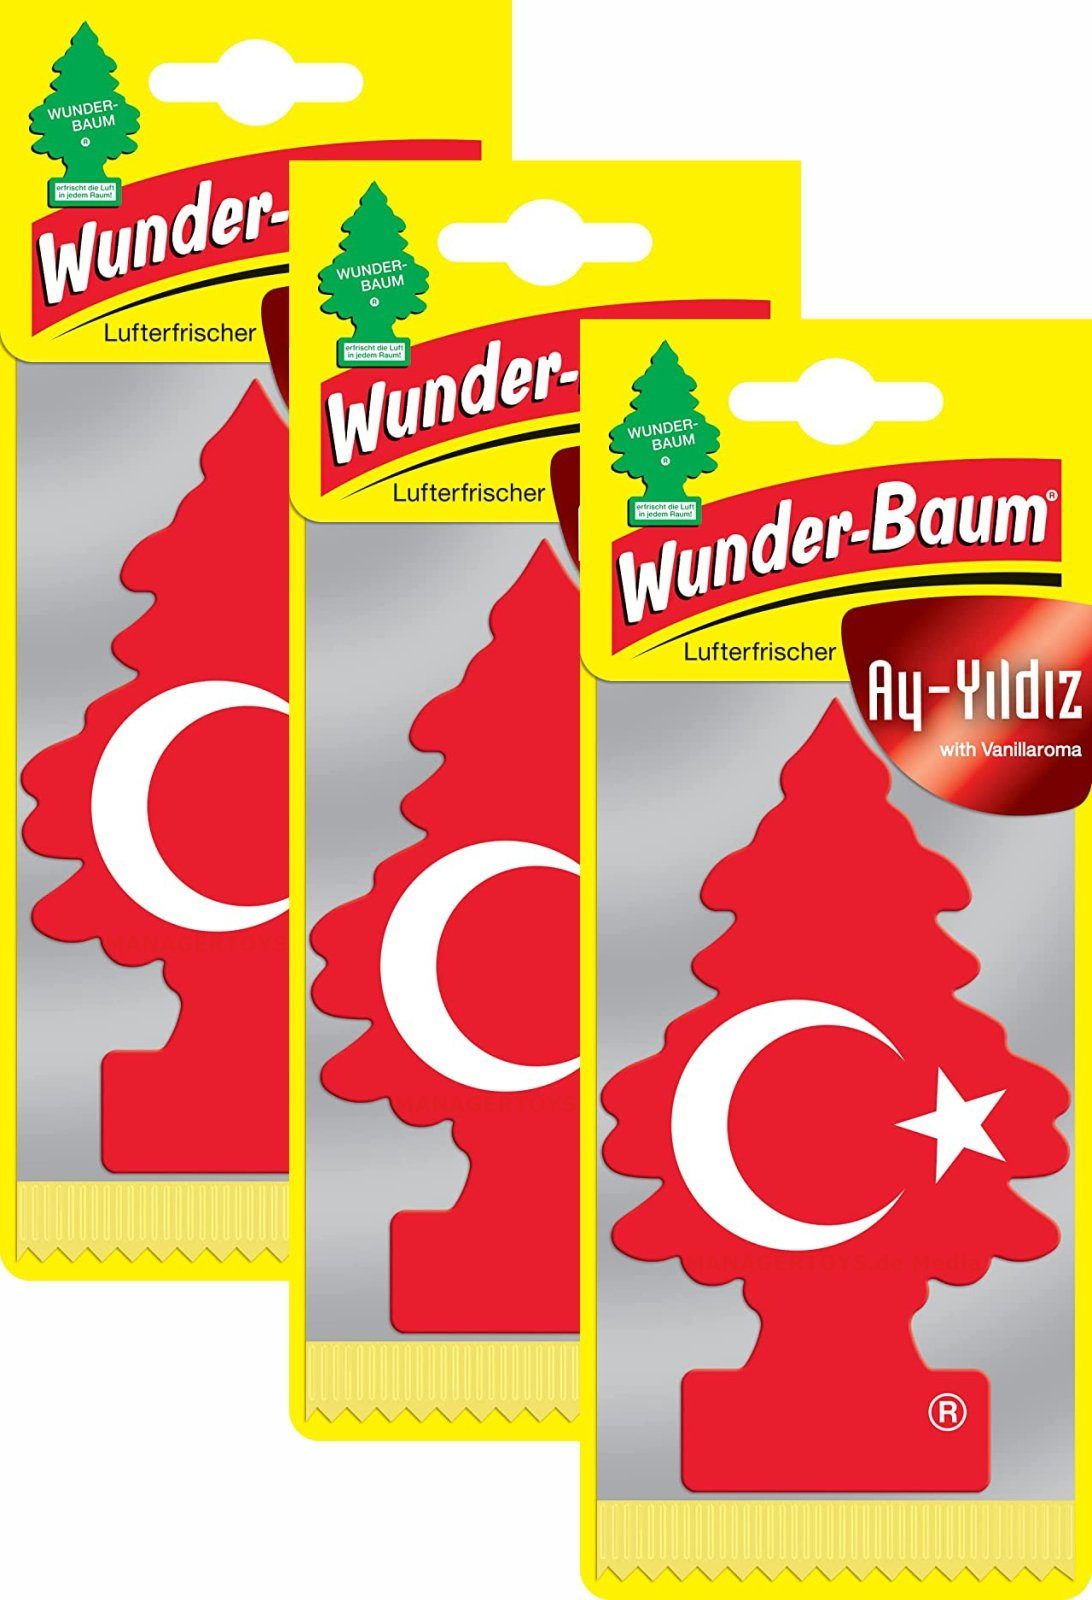 Wunder-Baum Hänge-Weihnachtsbaum little Tree 3er Ay-Yildiz Vanille drei Stück Set Wunderbaum türkischer